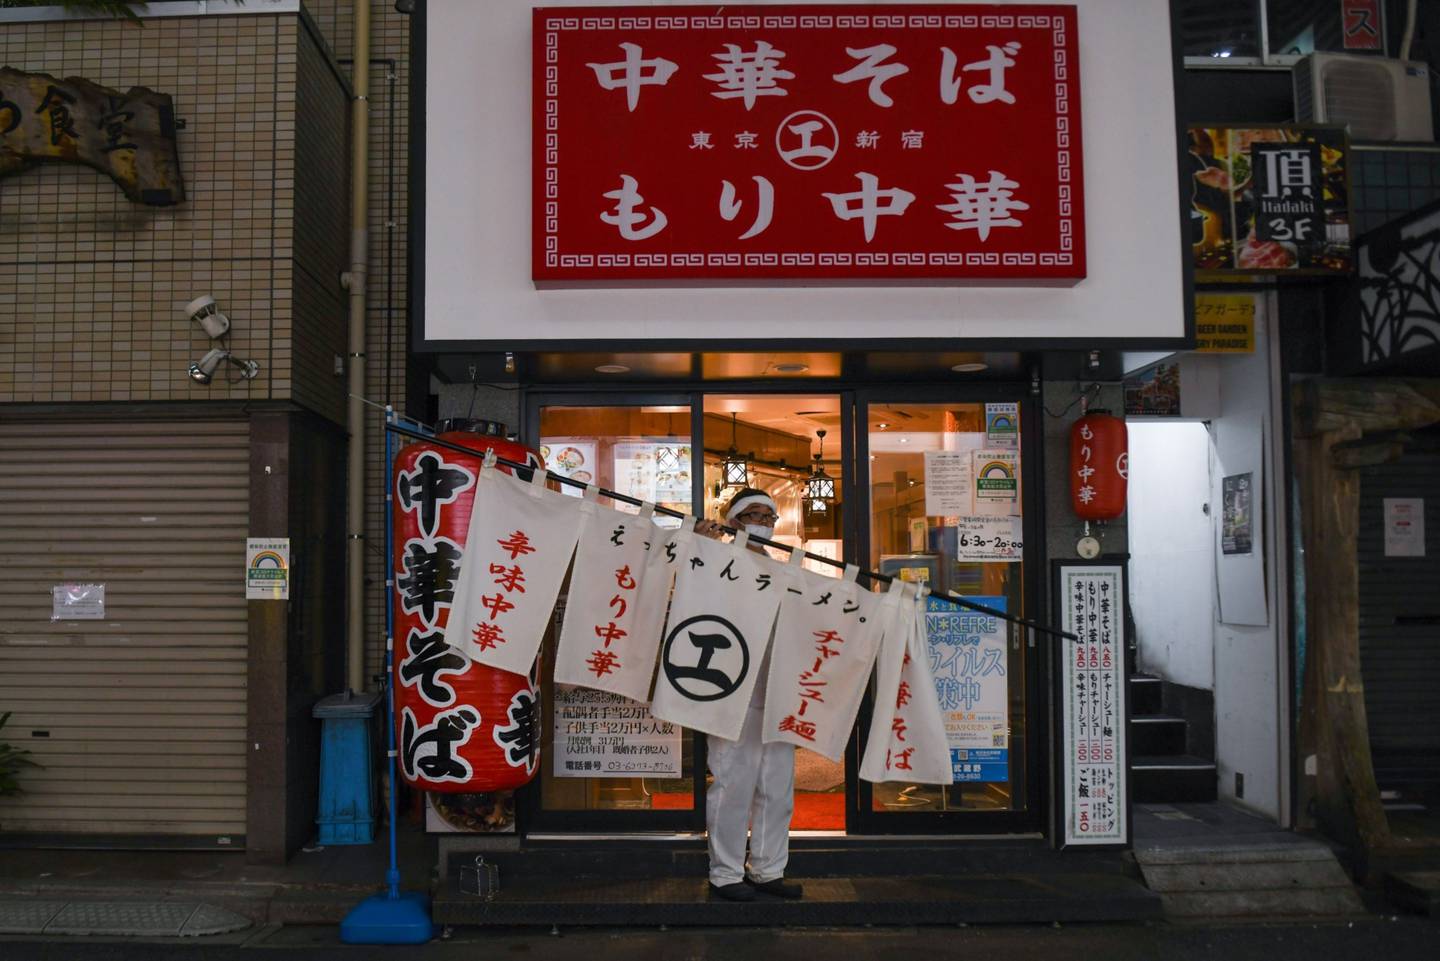 Un trabajador quita un cartel de un bar de ramen en Tokio, Japón.